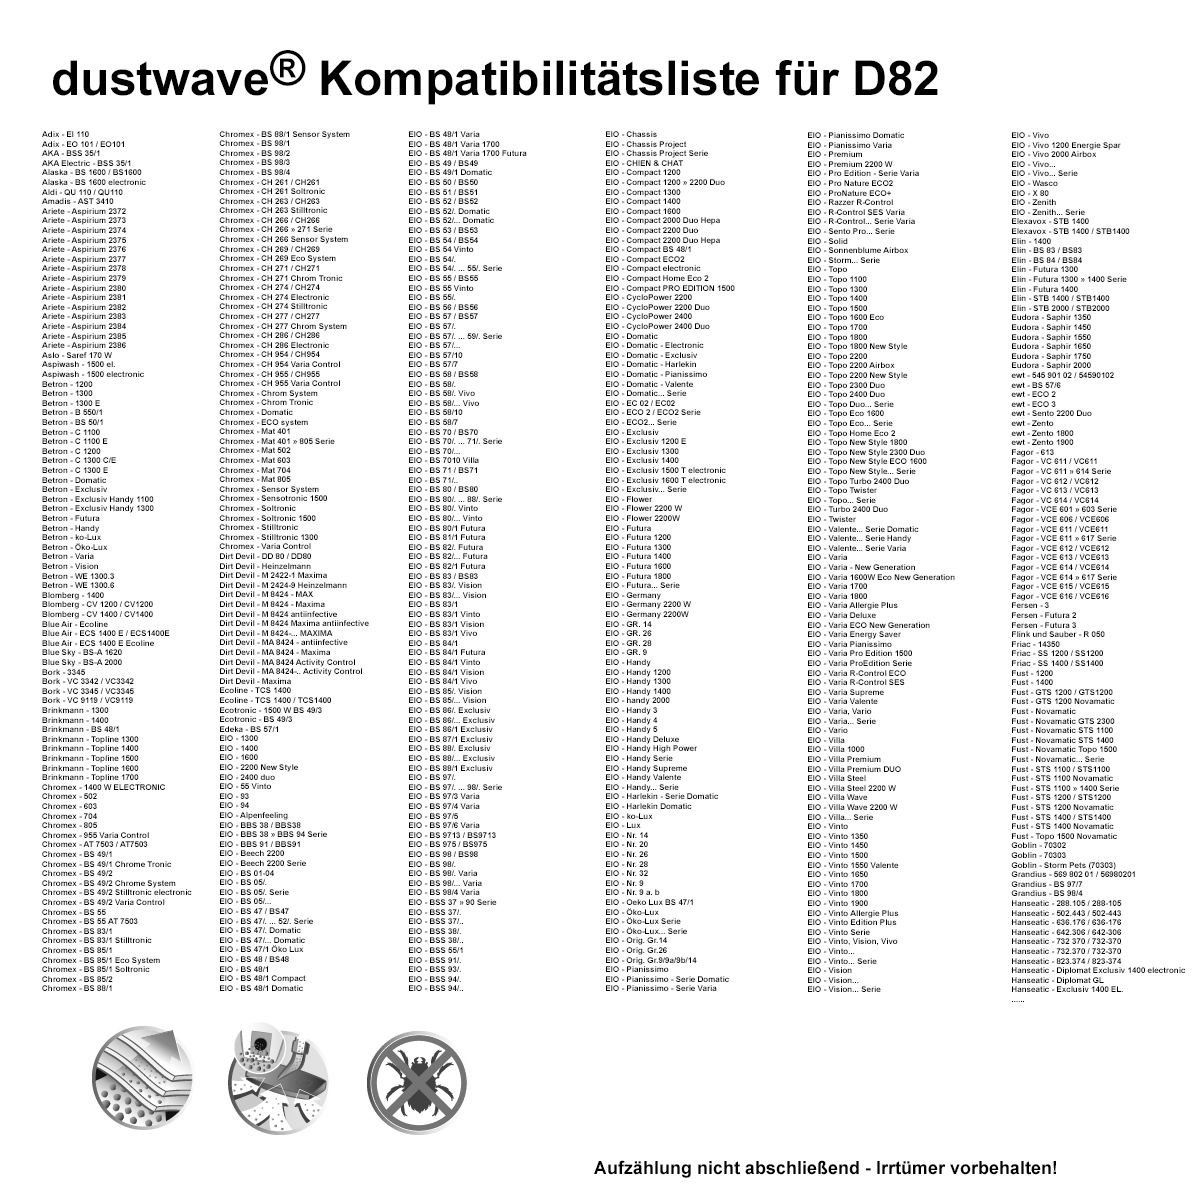 Dustwave® 1 Staubsaugerbeutel für Amadis AST 3410 - hocheffizient mit Hygieneverschluss - Made in Germany